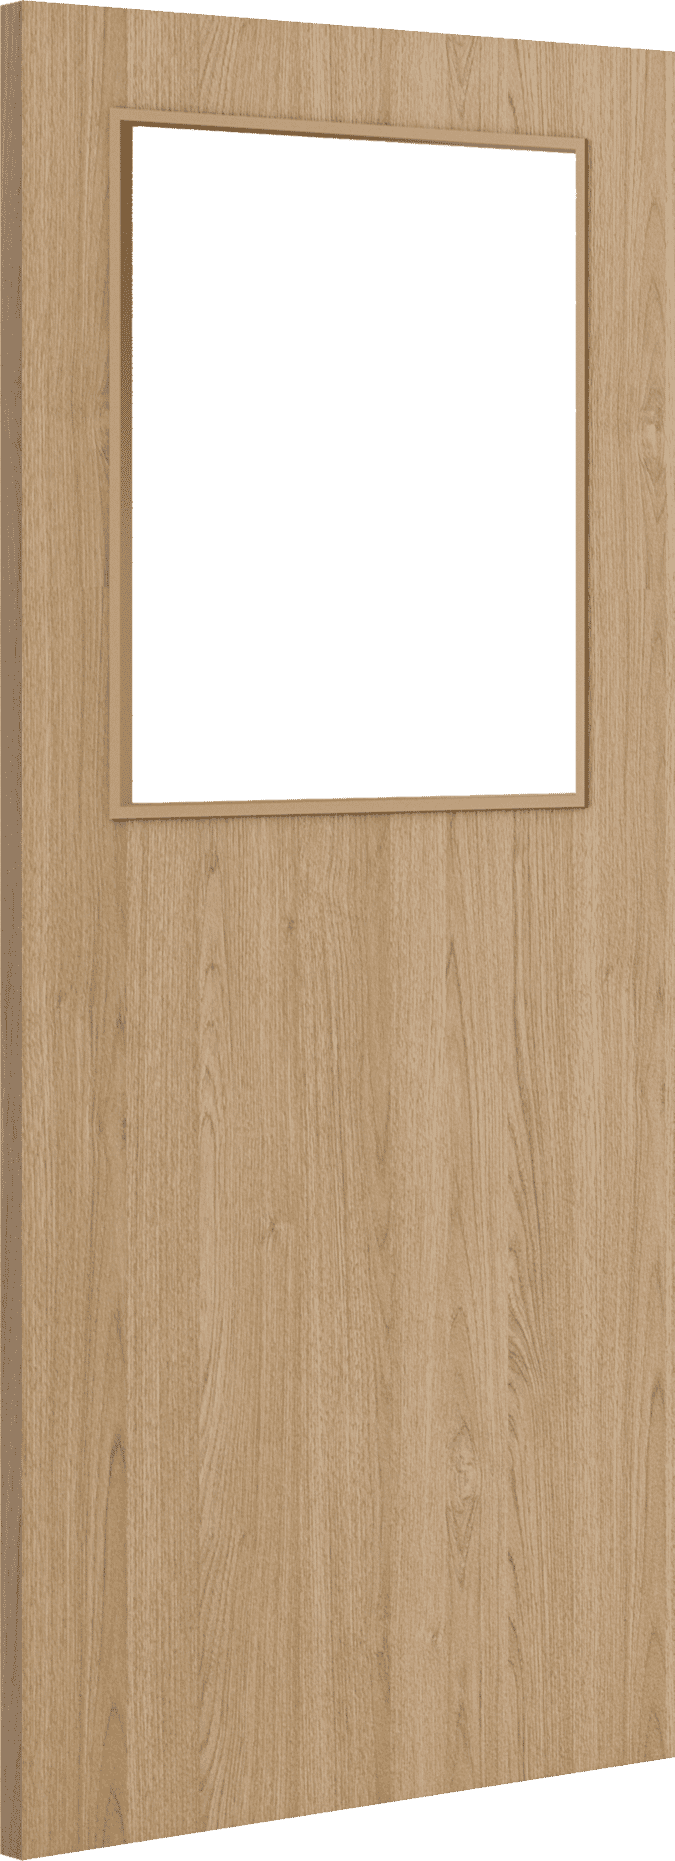 1981mm x 838mm x 54mm (33") Architectural Oak 01 Clear Glazed - Prefinished FD60 Fire Door Blank